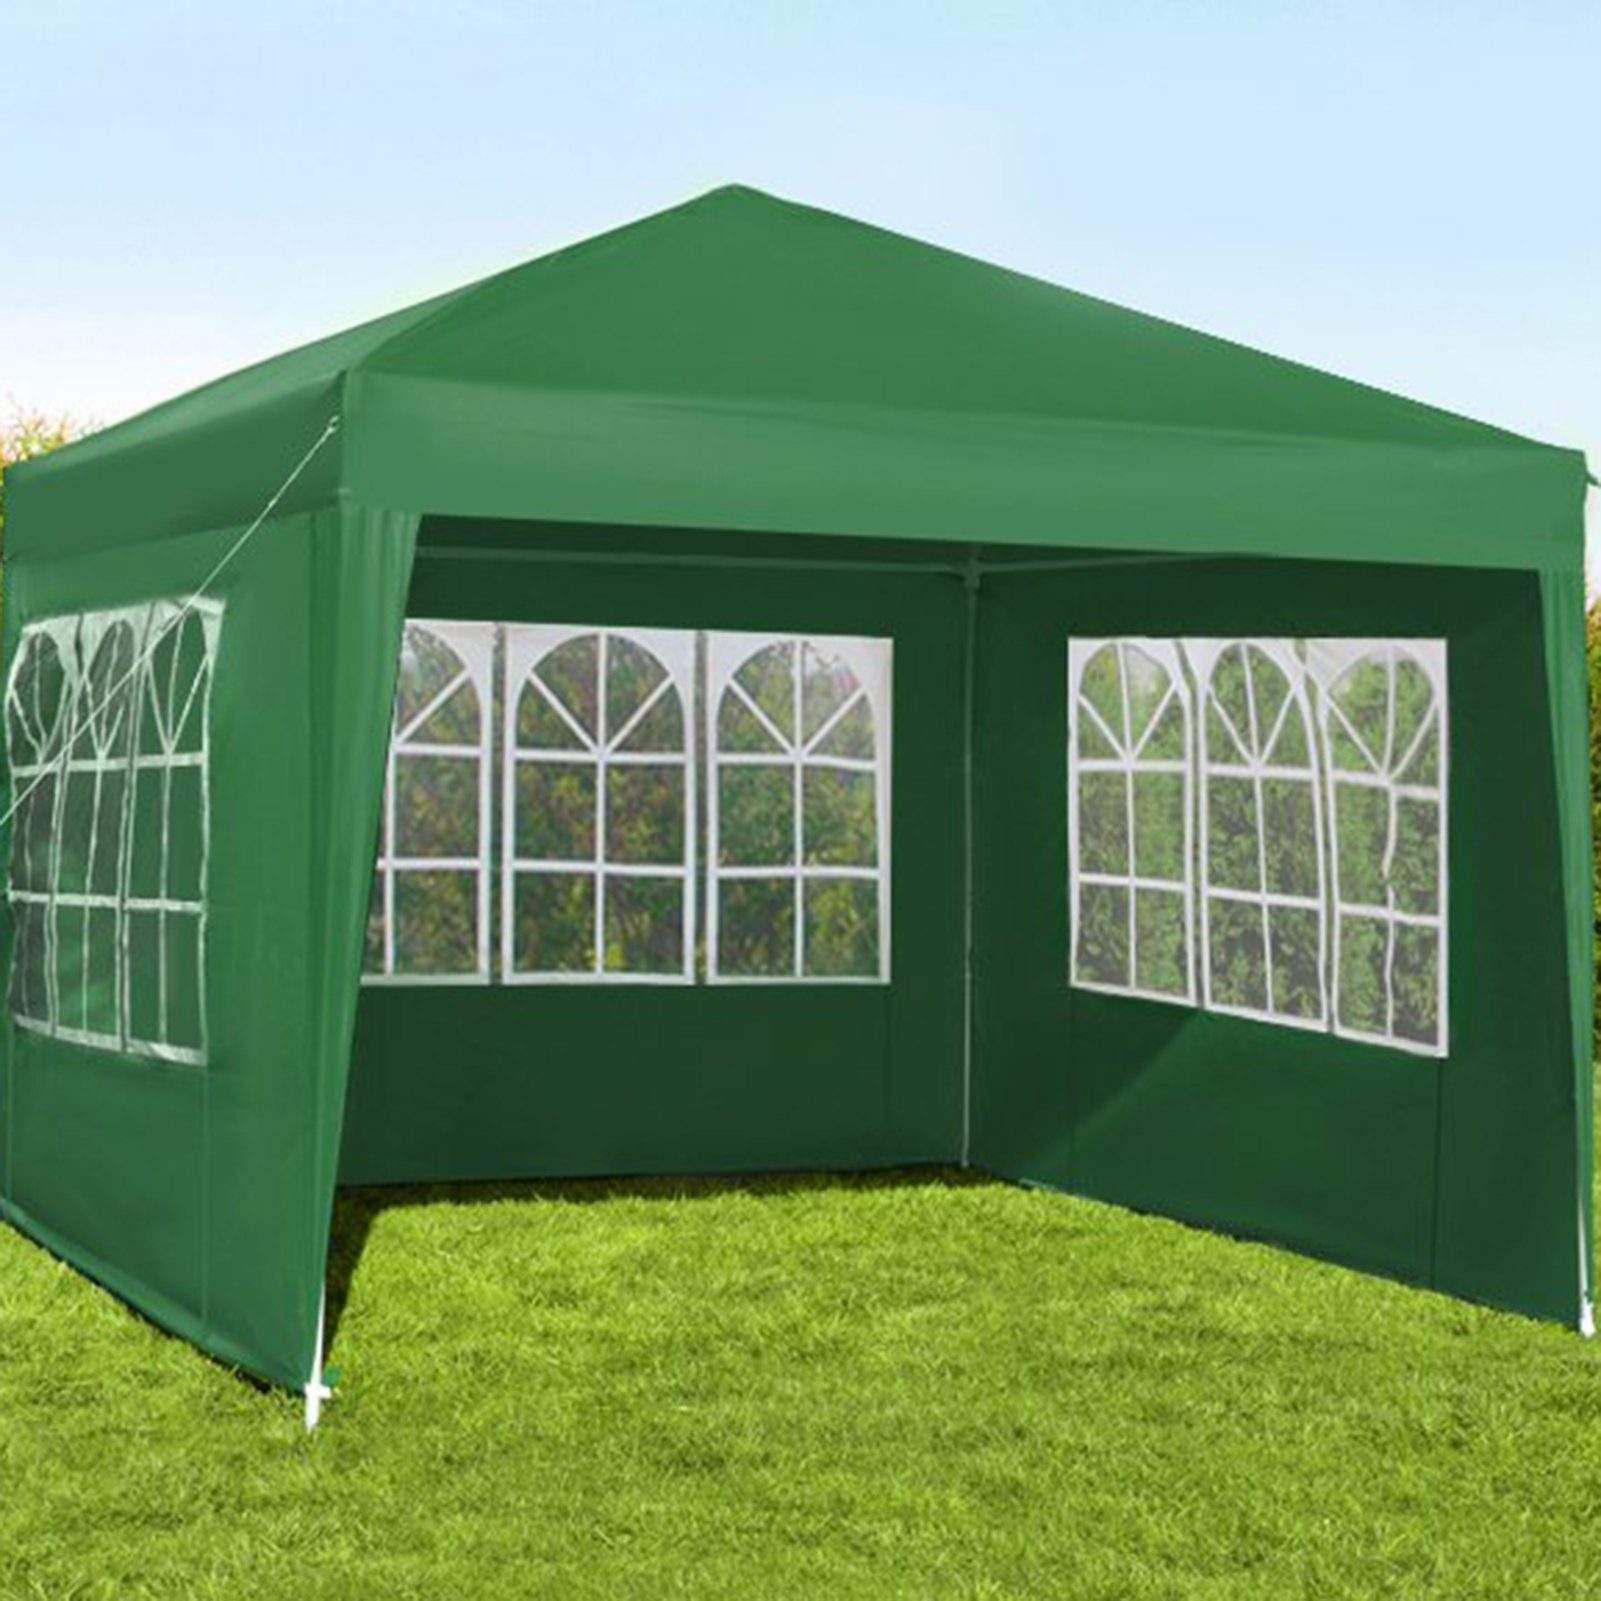 Rutaqian Tarp-Zelt Zelttuch Faltbar Wasserdicht Hat 3 Seiten und transparente Fenster, (Multifunktionaler Camping-Sonnenschutz aus Oxford-Stoff, Wind- und regensicheres Wickeltuch für Außenstallzelte), für Festival, Party, Marktstand, Flohmarkt und Campen grün